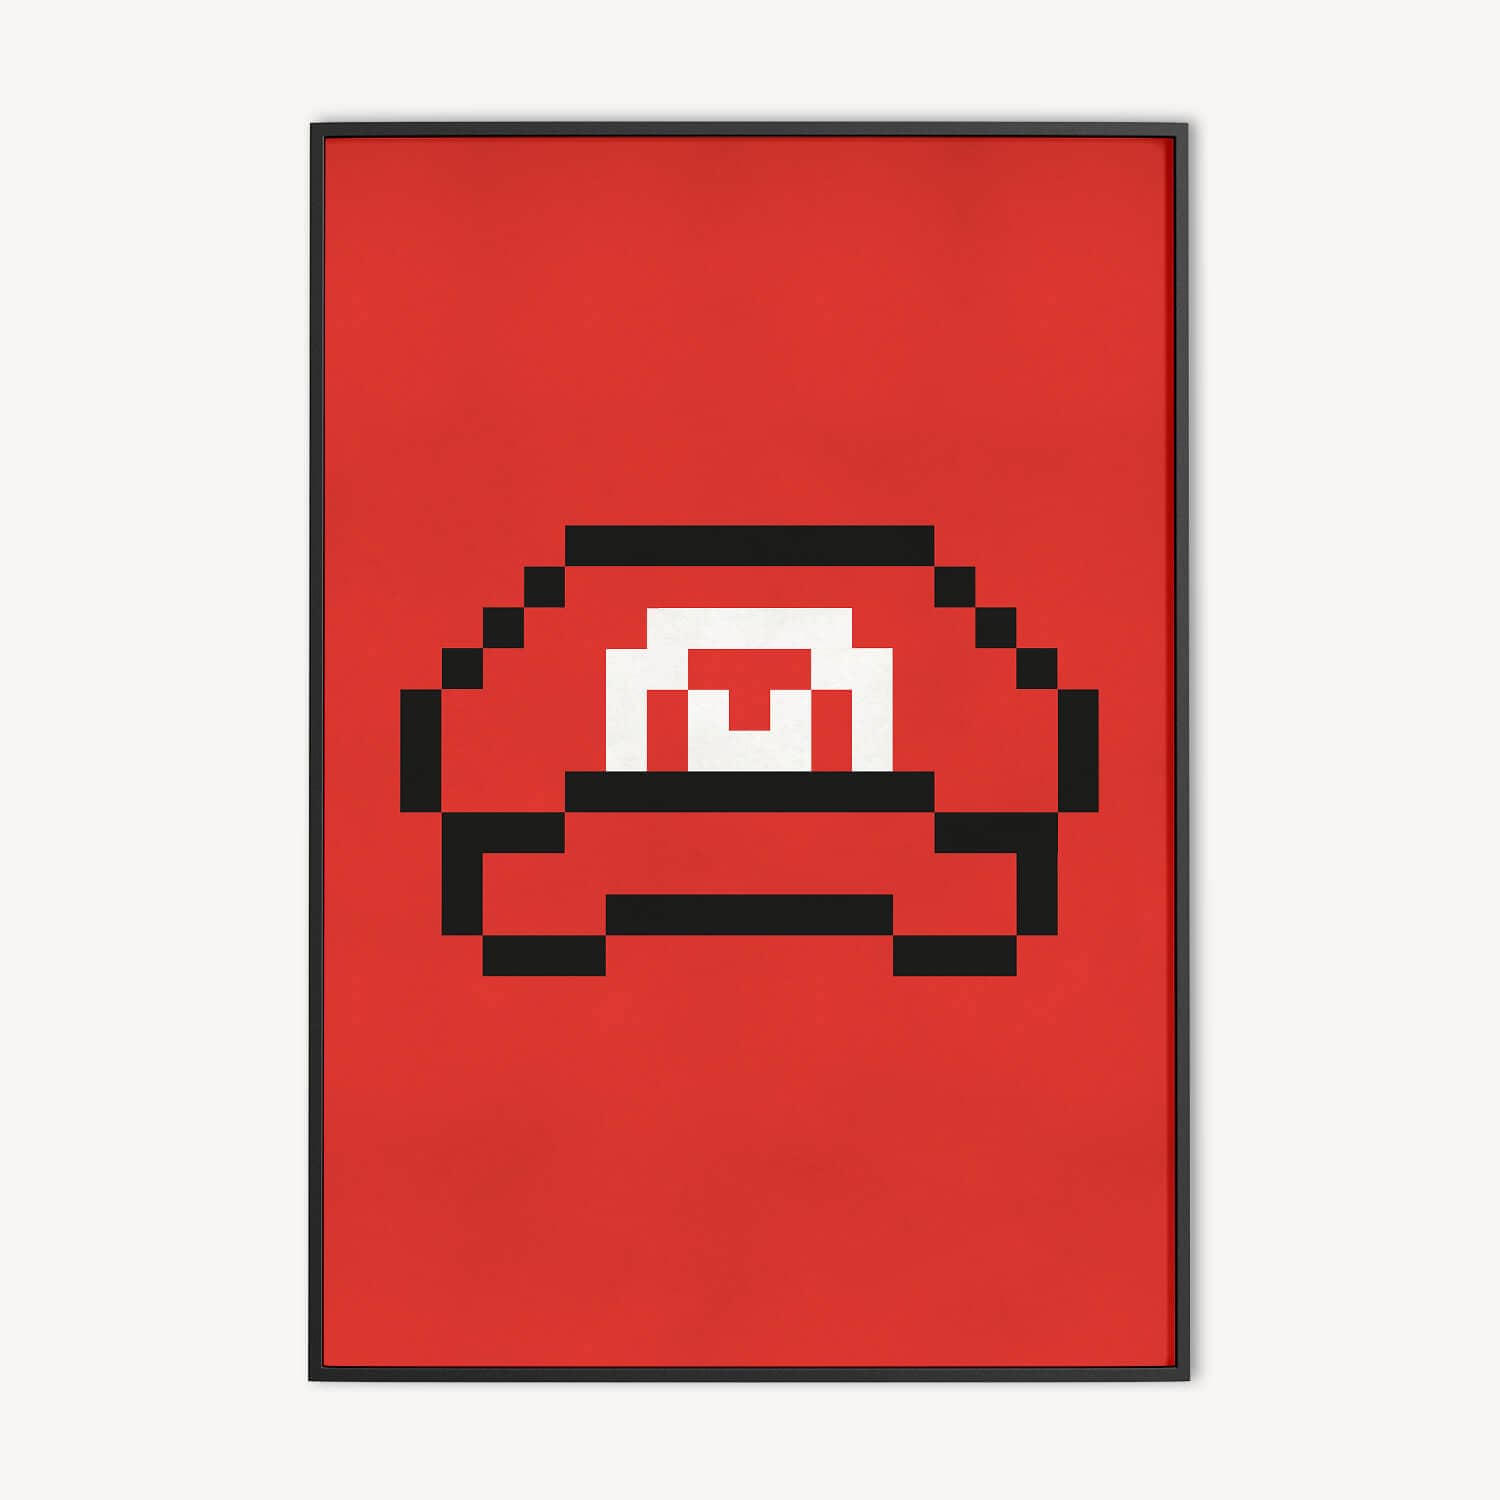 abstracte pixel art poster van retro game